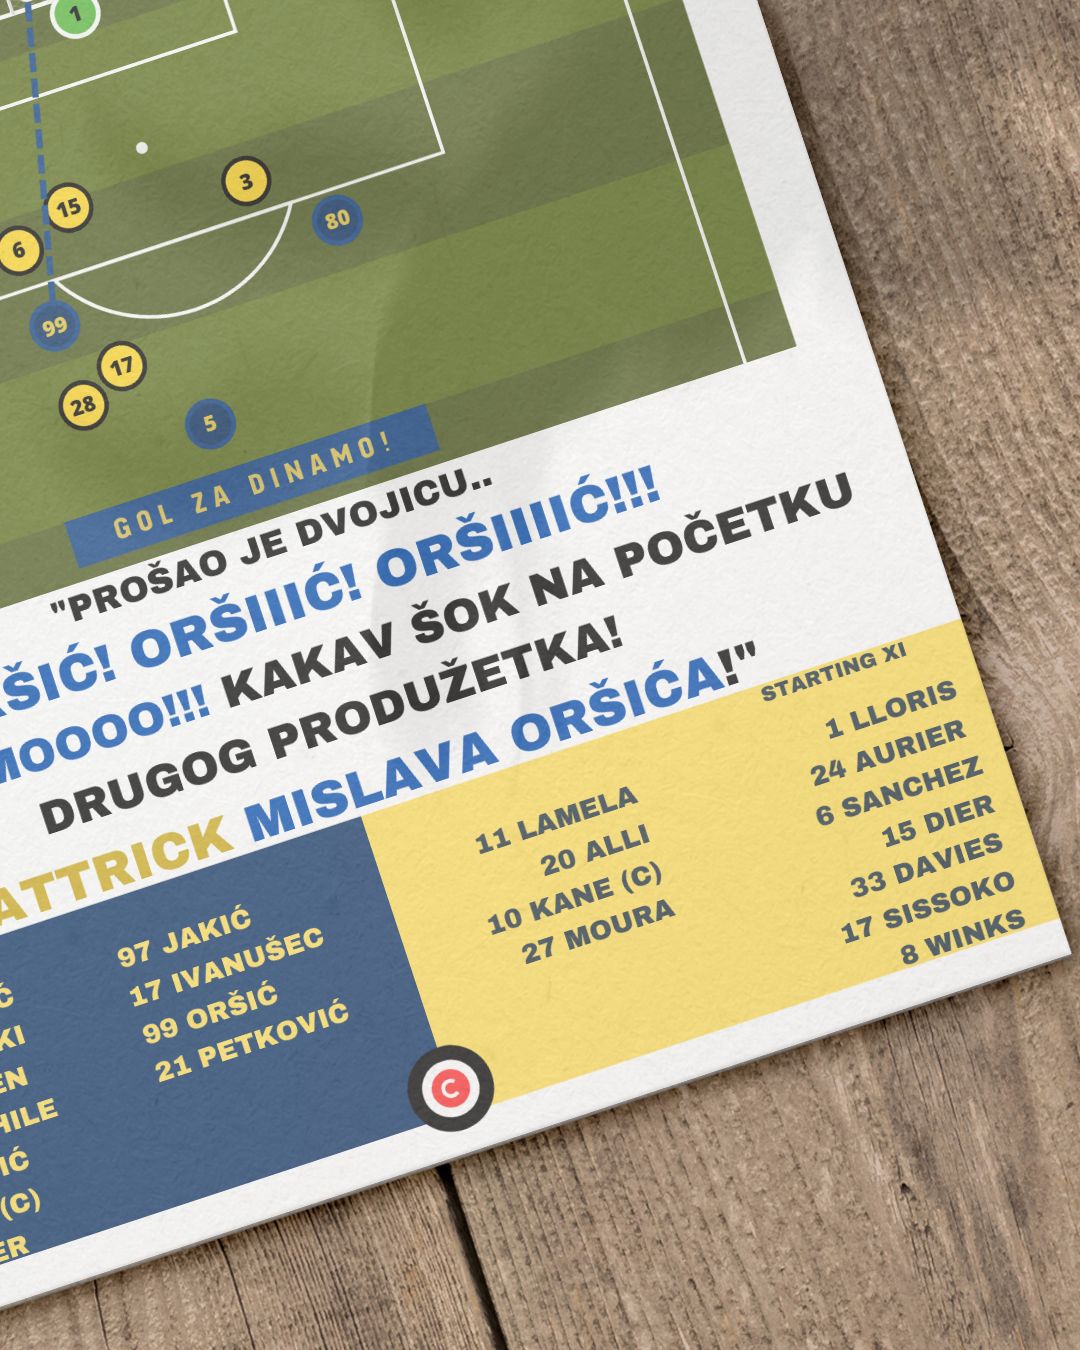 Mislav Oršić Goal vs Tottenham - UEFA Europa League Round of 16 - Dinamo Zagreb - Premium  from CATENACCIO - Just €14.50! Shop now at CatenaccioDesigns